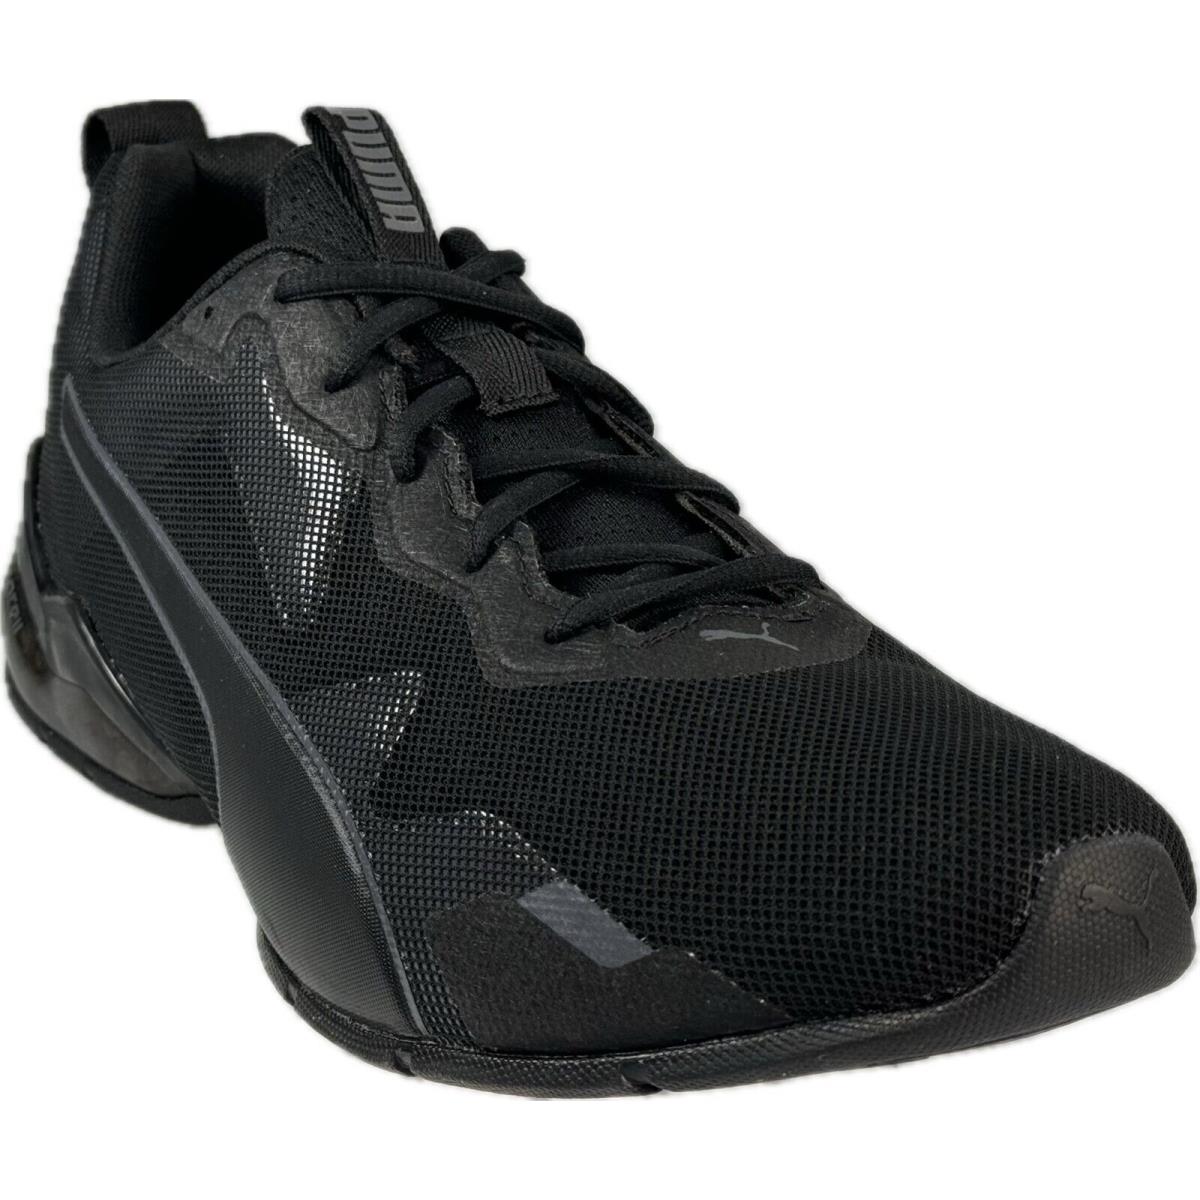 Puma Cell Valiant Men`s Black Running Sneaker Sz 14 19405503 - Black-asphalt